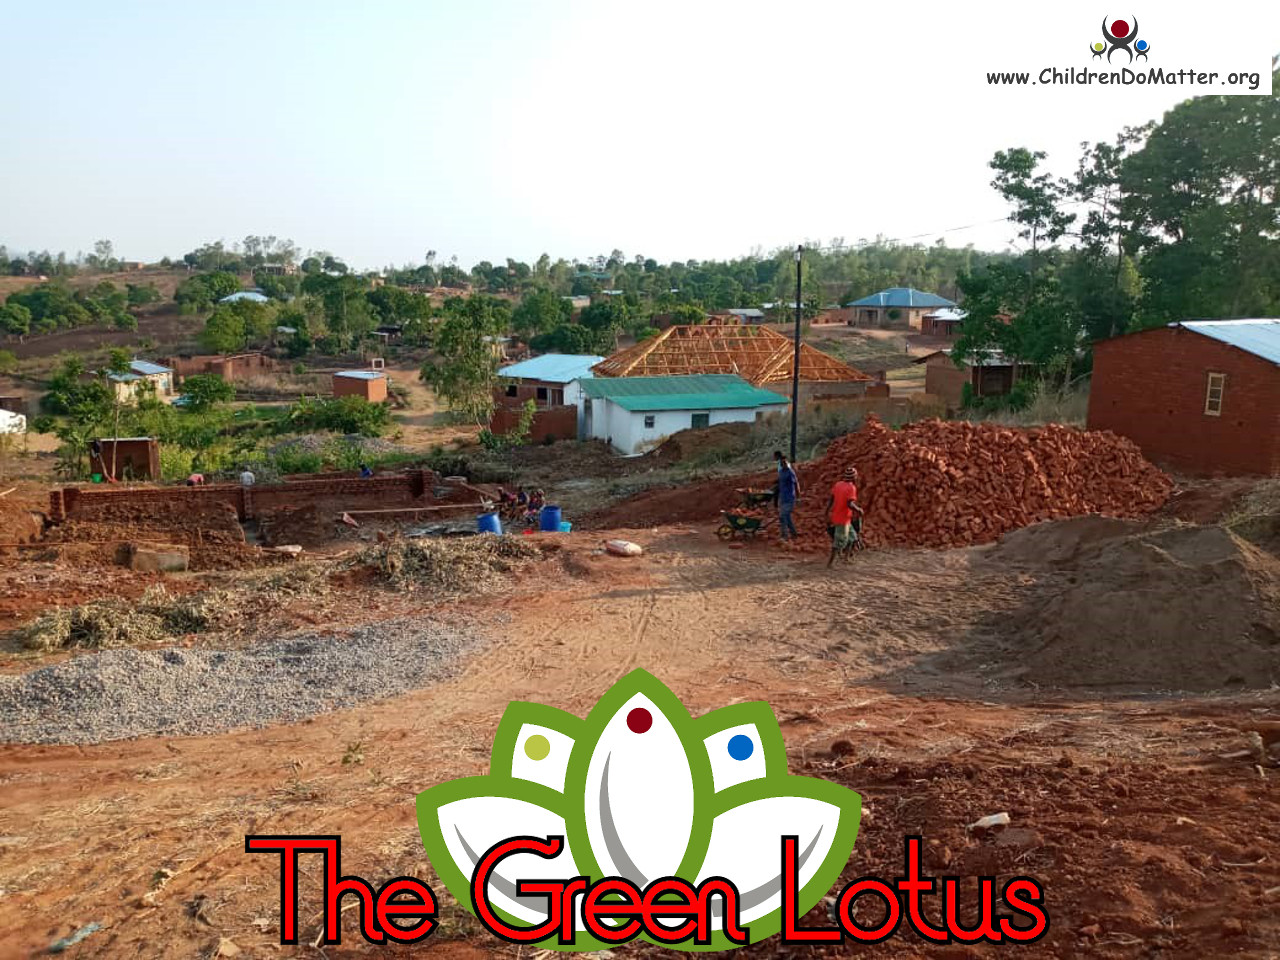 costruzione dell'orfanotrofio casa di accoglienza the green lotus a blantyre malawi - children do matter - 3